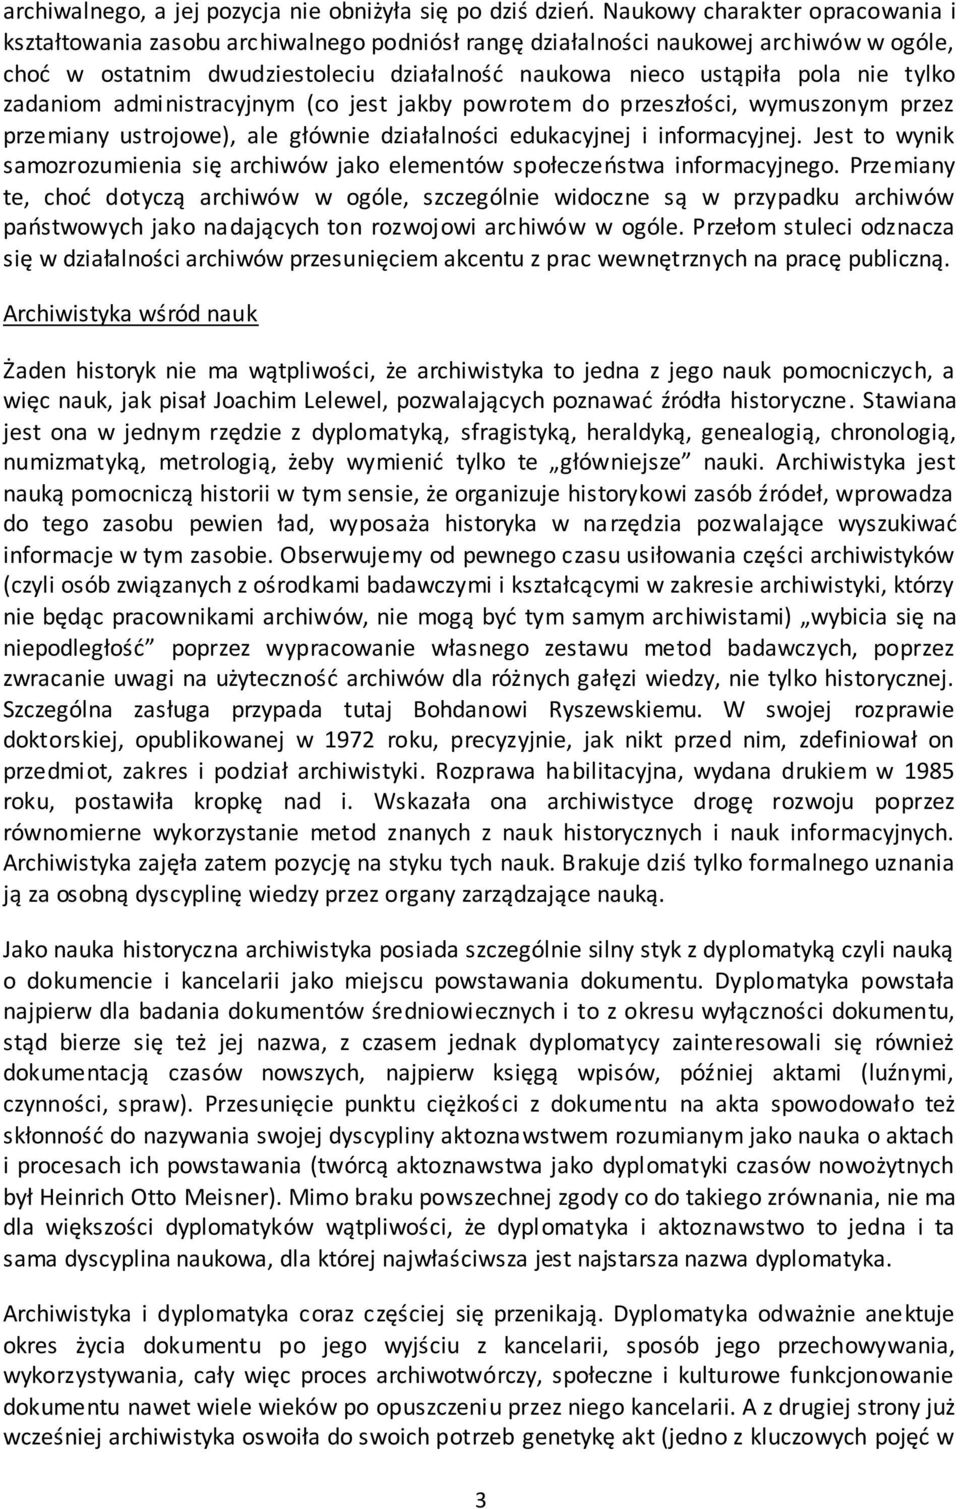 Waldemar Chorążyczewski. Archiwistyka dla początkujących (wersja 1) - PDF  Free Download